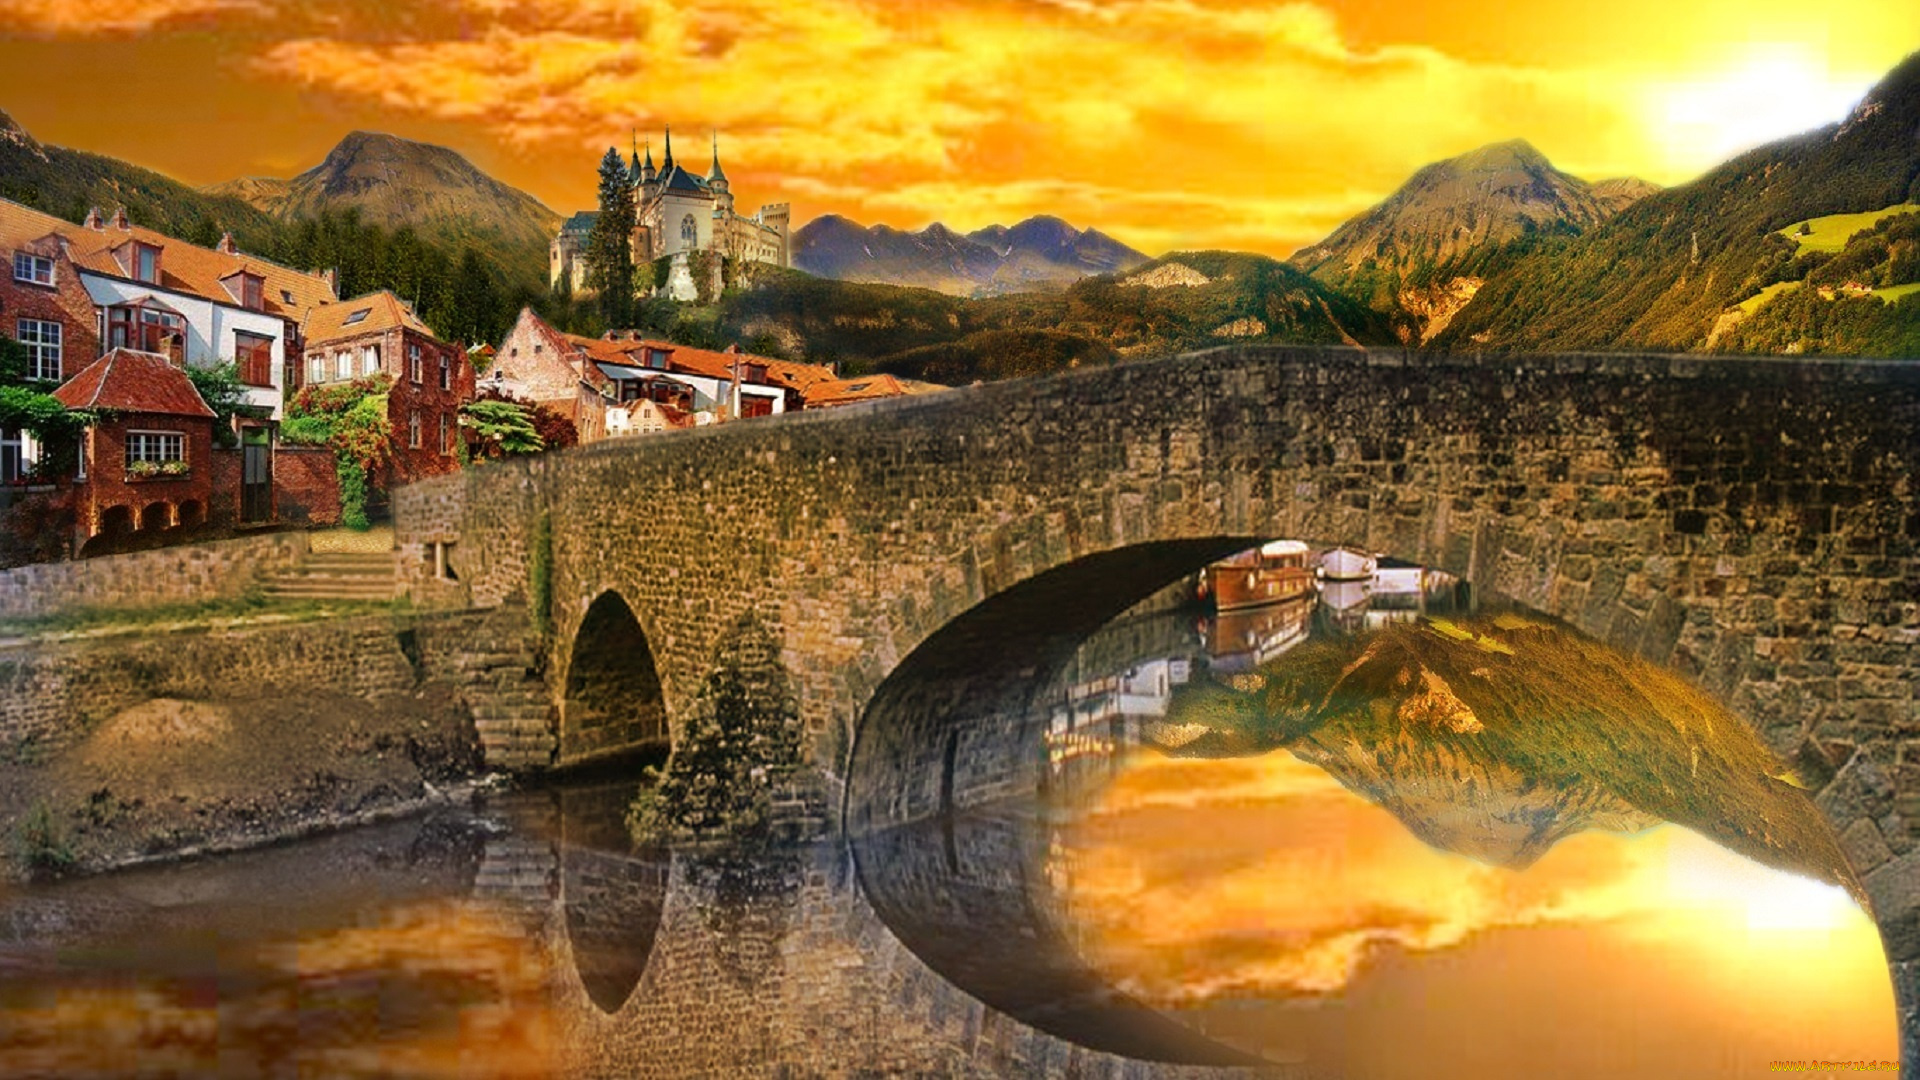 города, -, мосты, alexyamato, швейцария, отражение, река, небо, замок, горы, городок, мост